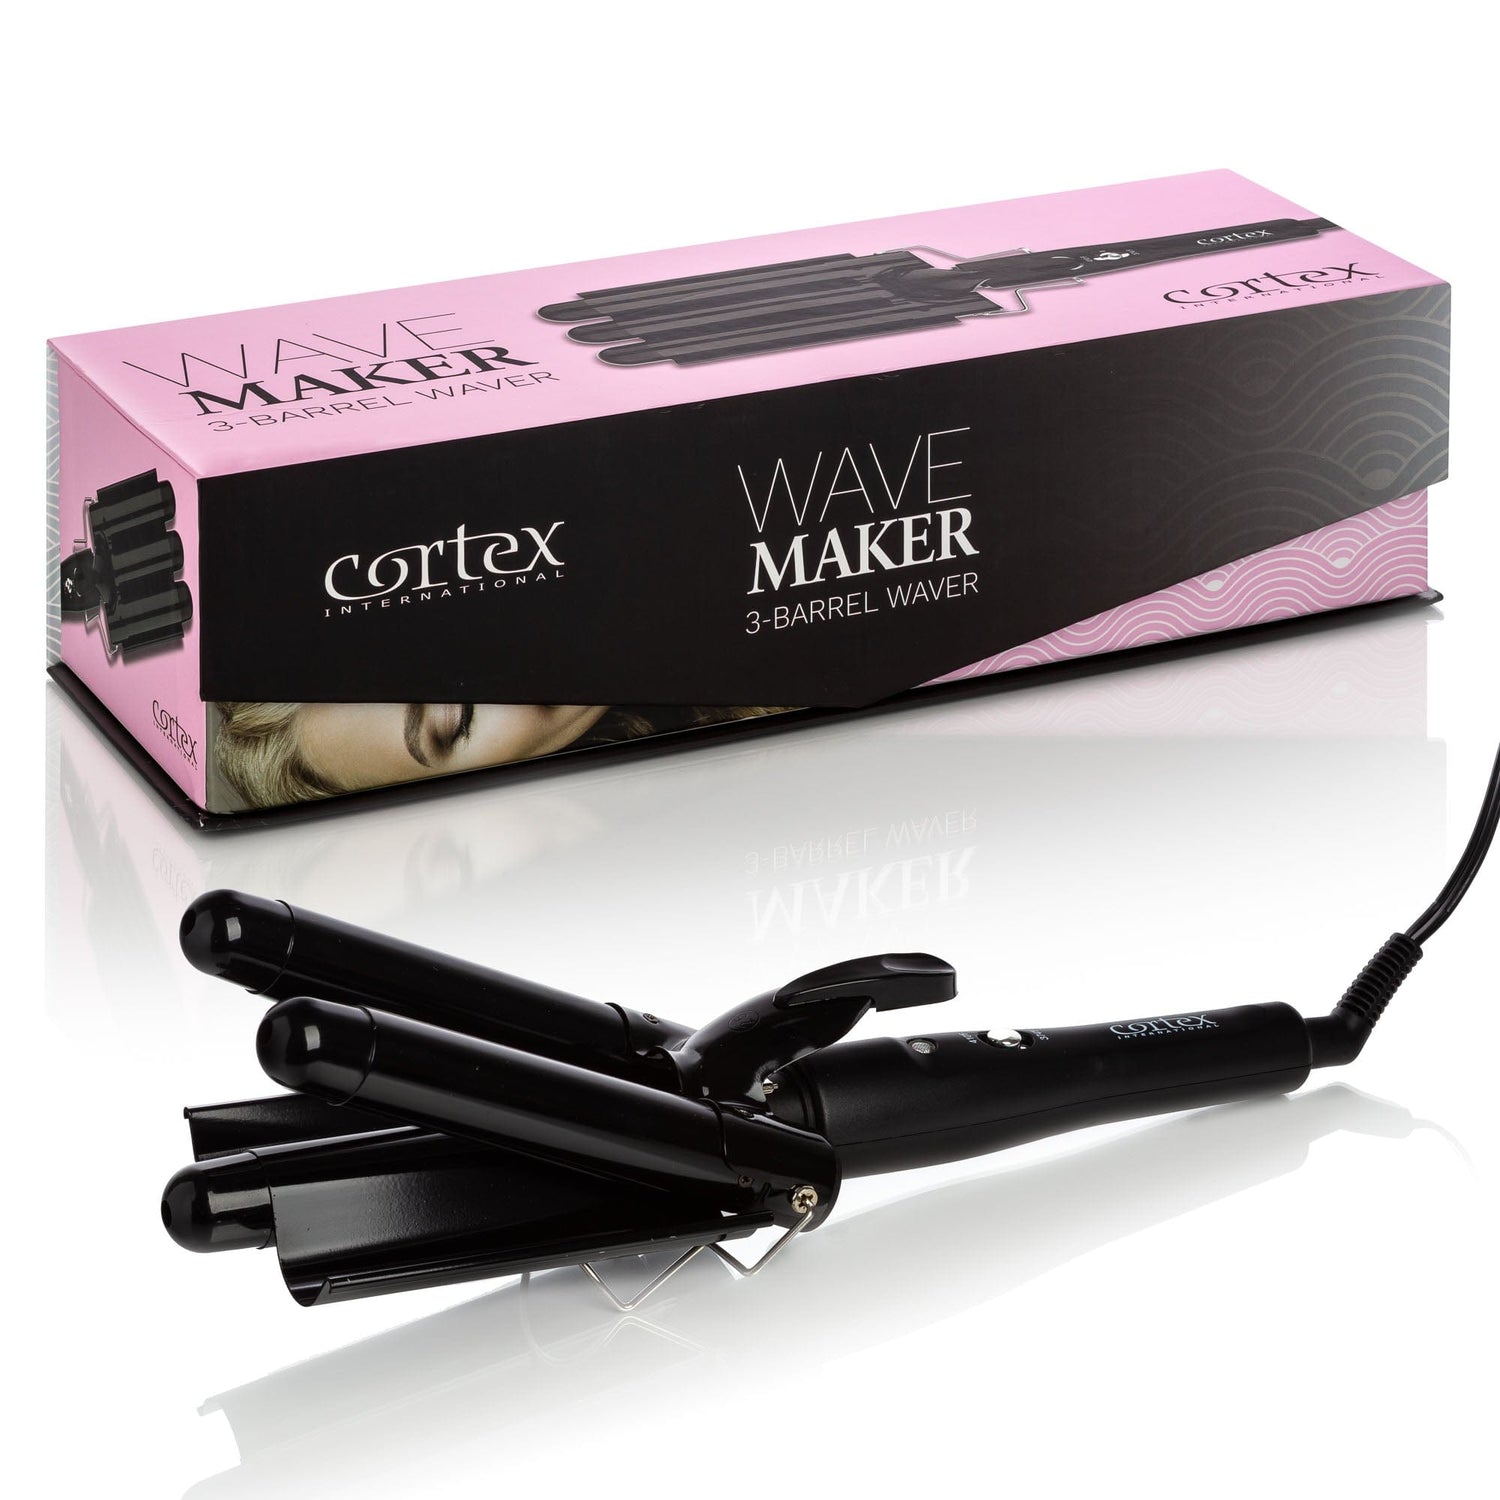 Cortex International Black/Black Wave Maker - 3-Barrel Waver